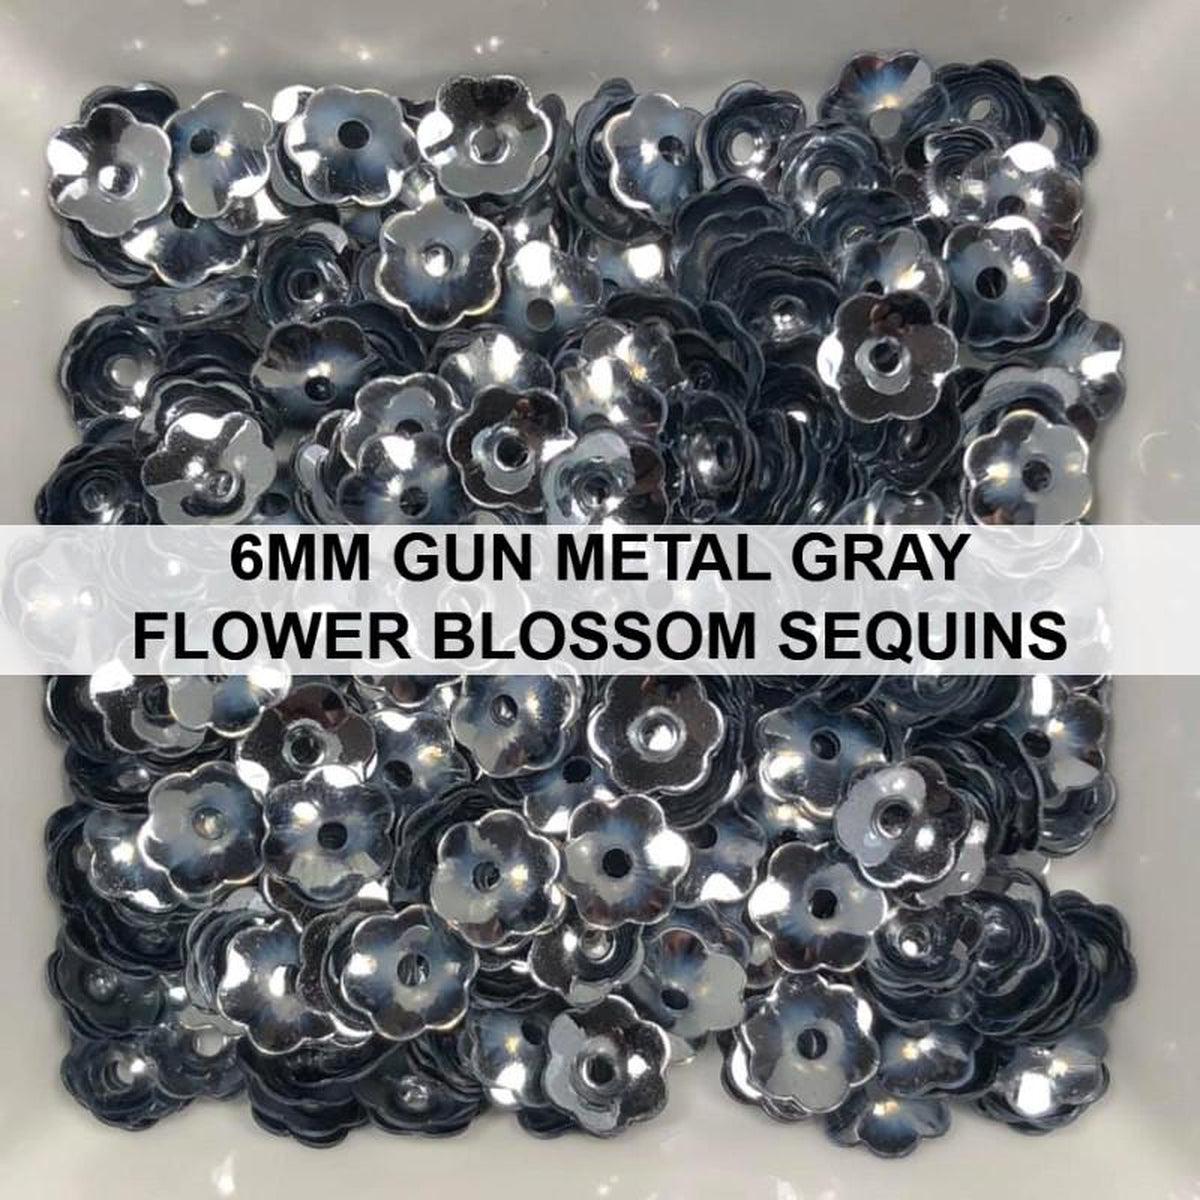 6mm Gun Metal Grey Flower Blossom Sequins - Kat Scrappiness